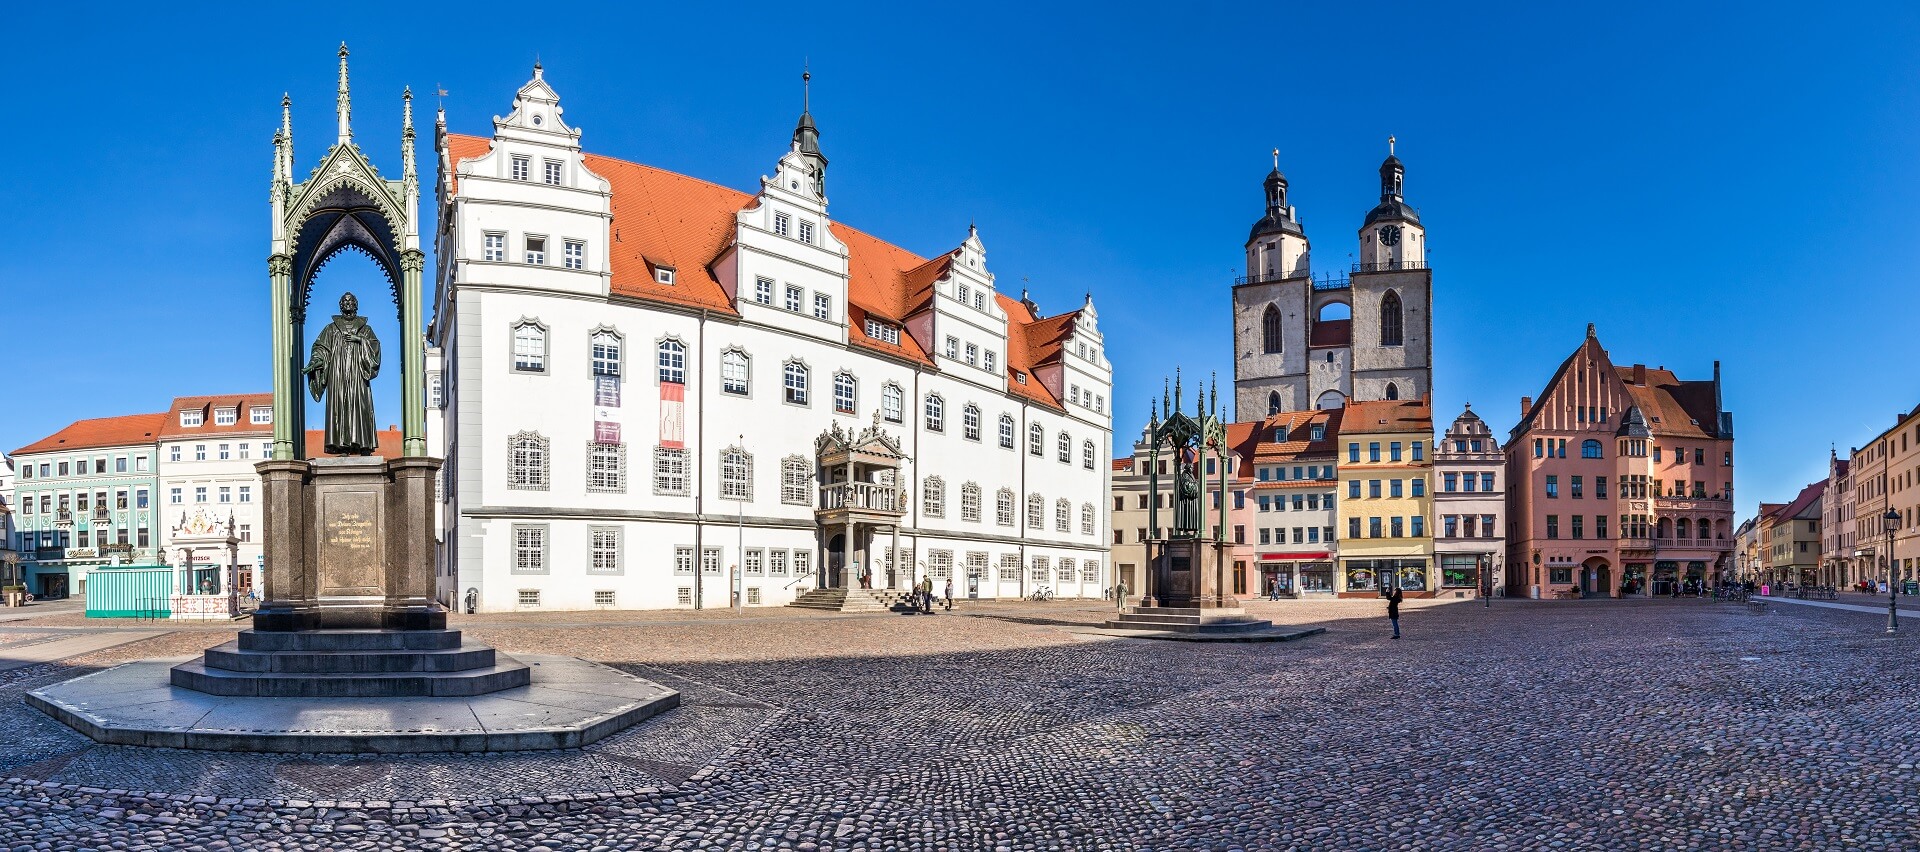 Marktplatz mit historischen Gebäuden in Wittenberg